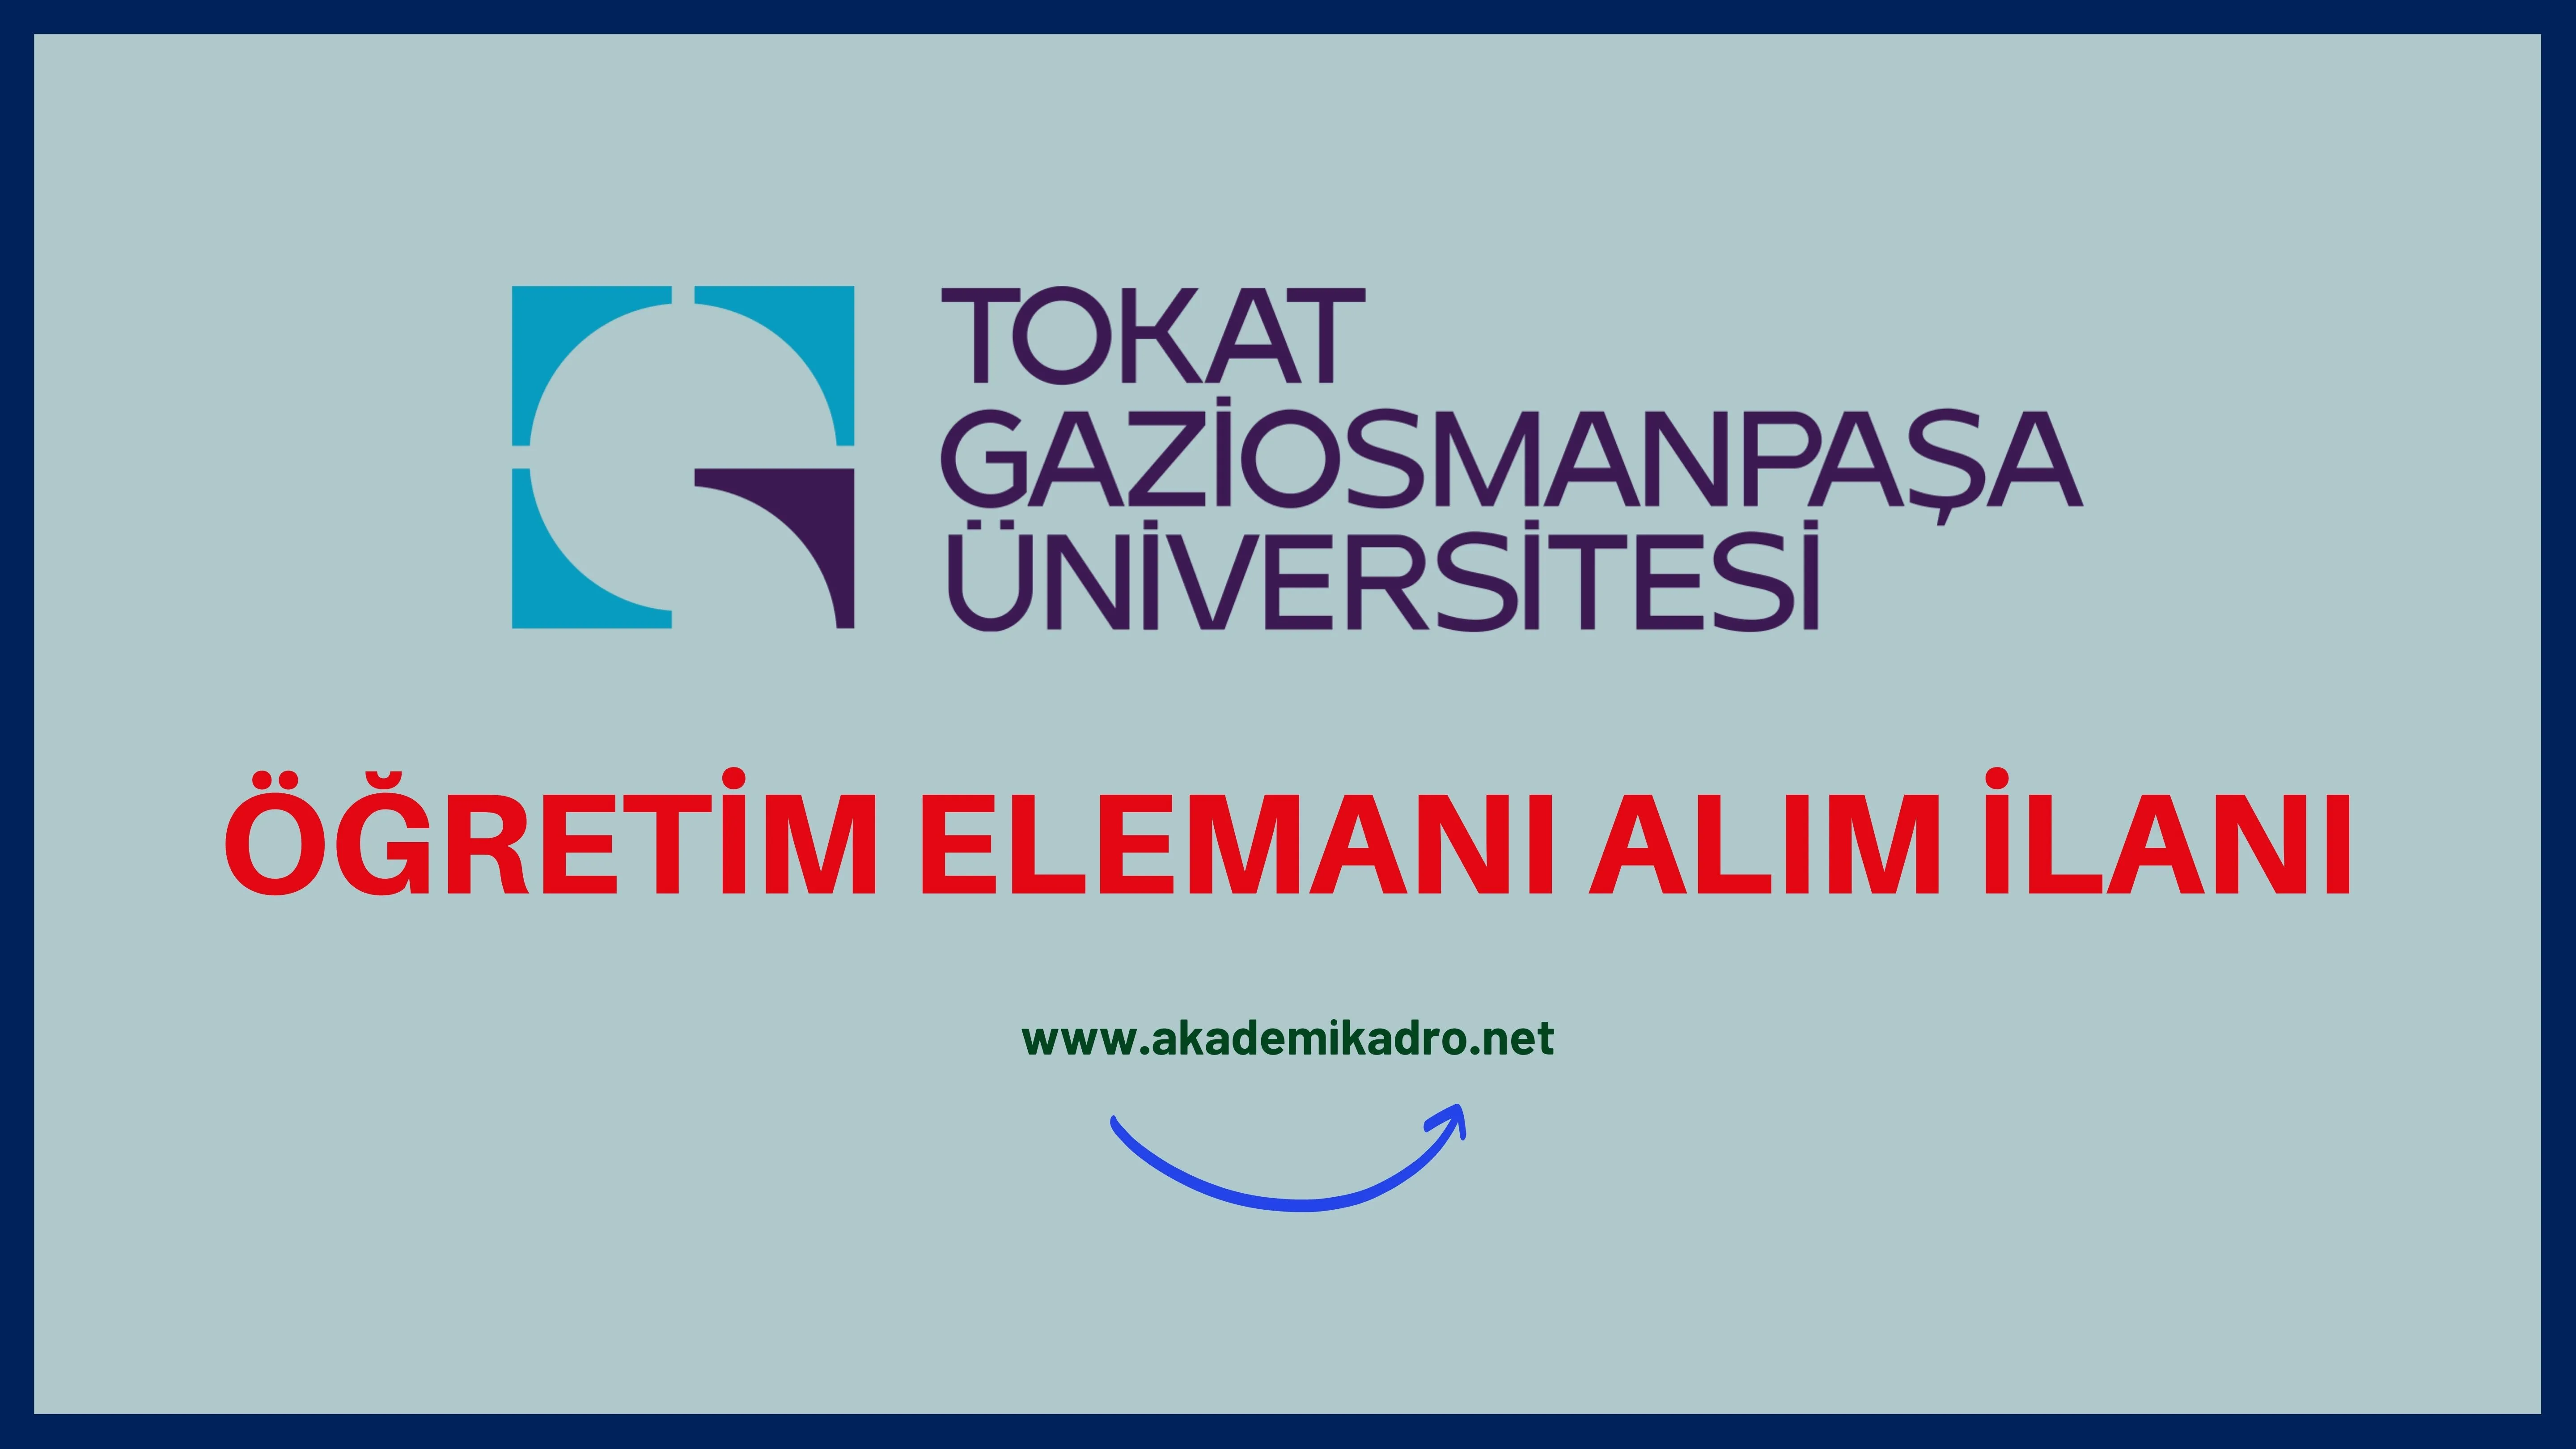 Tokat Gaziosmanpaşa Üniversitesi 45 öğretim üyesi, 25 Araştırma görevlisi ve 5 öğretim görevlisi alacaktır.